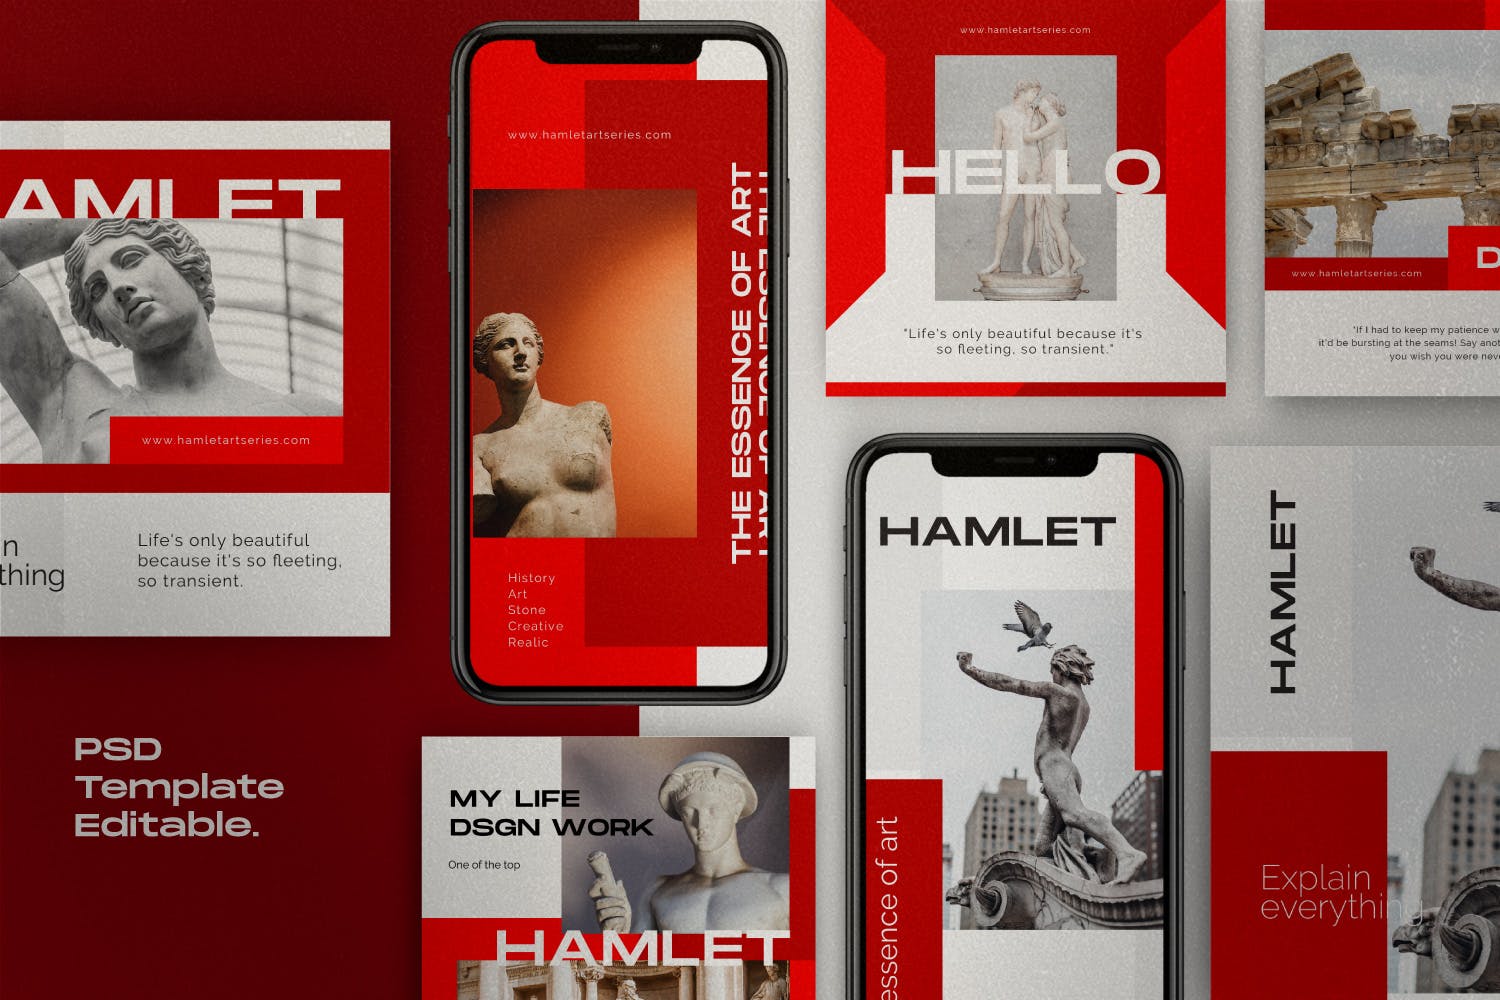 红色设计风格Instagram贴图&品牌故事设计素材包v1 HAMLET PACK 1 – Instagram Template + Stories插图(1)